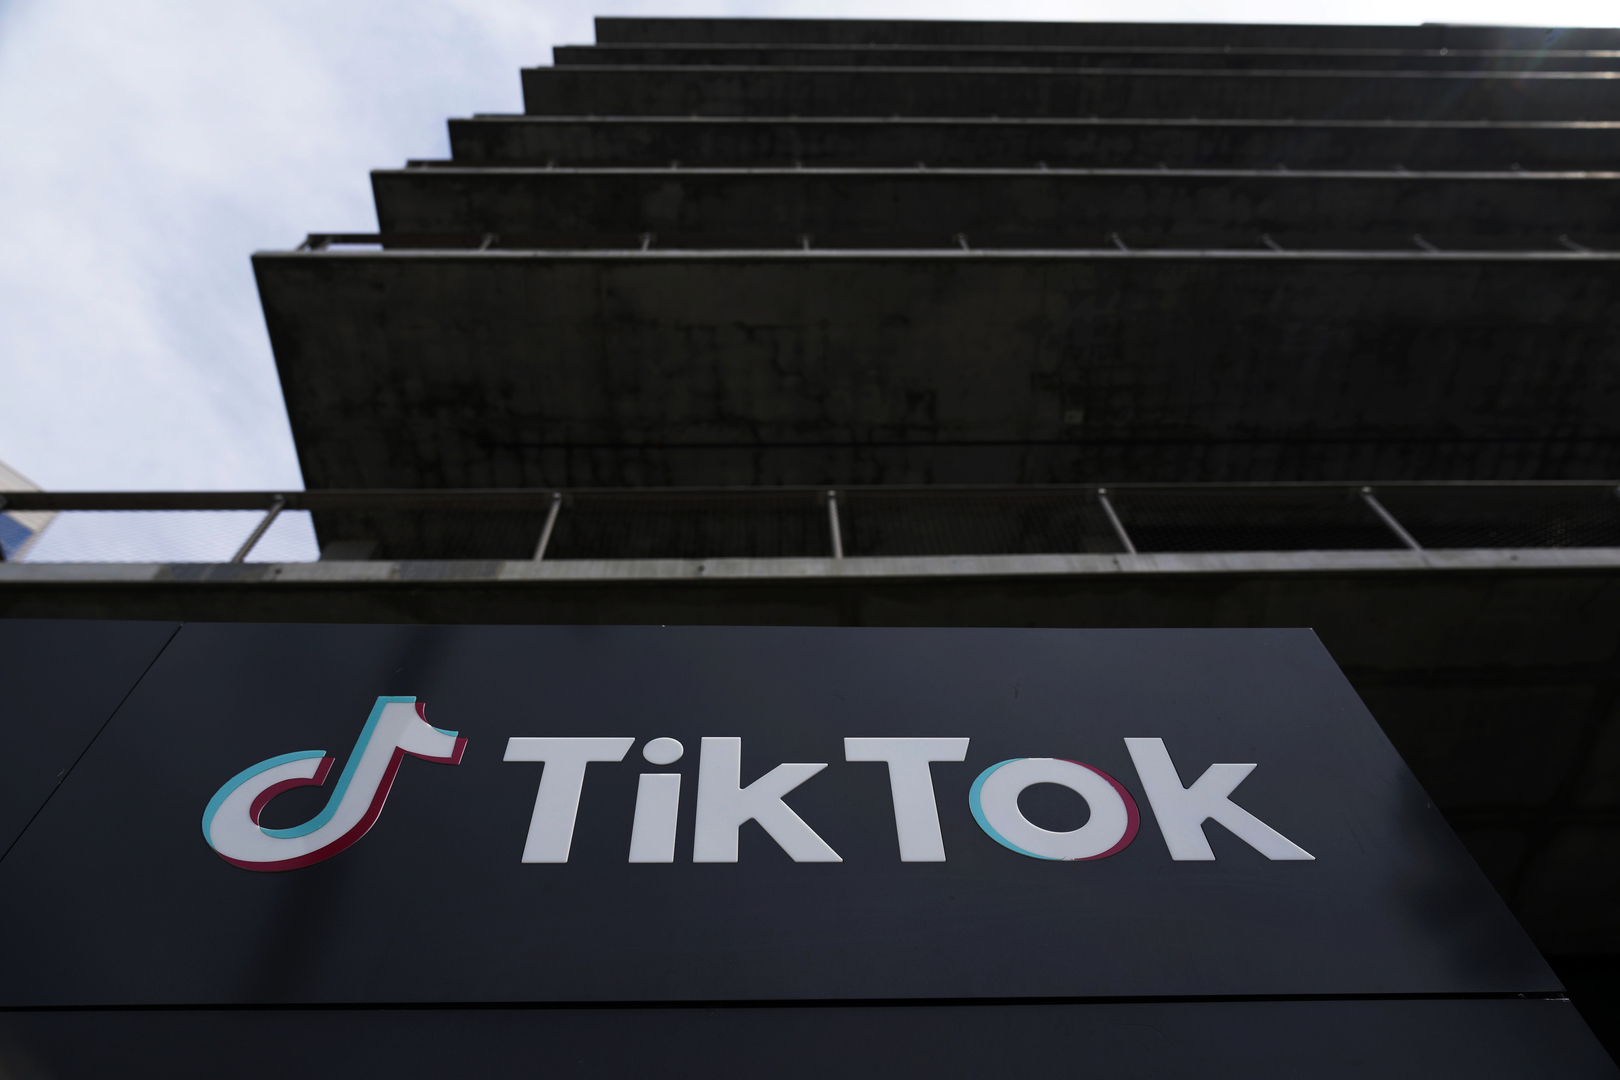 مجلس النواب الأمريكي يقر تشريعا لحظر TikTok